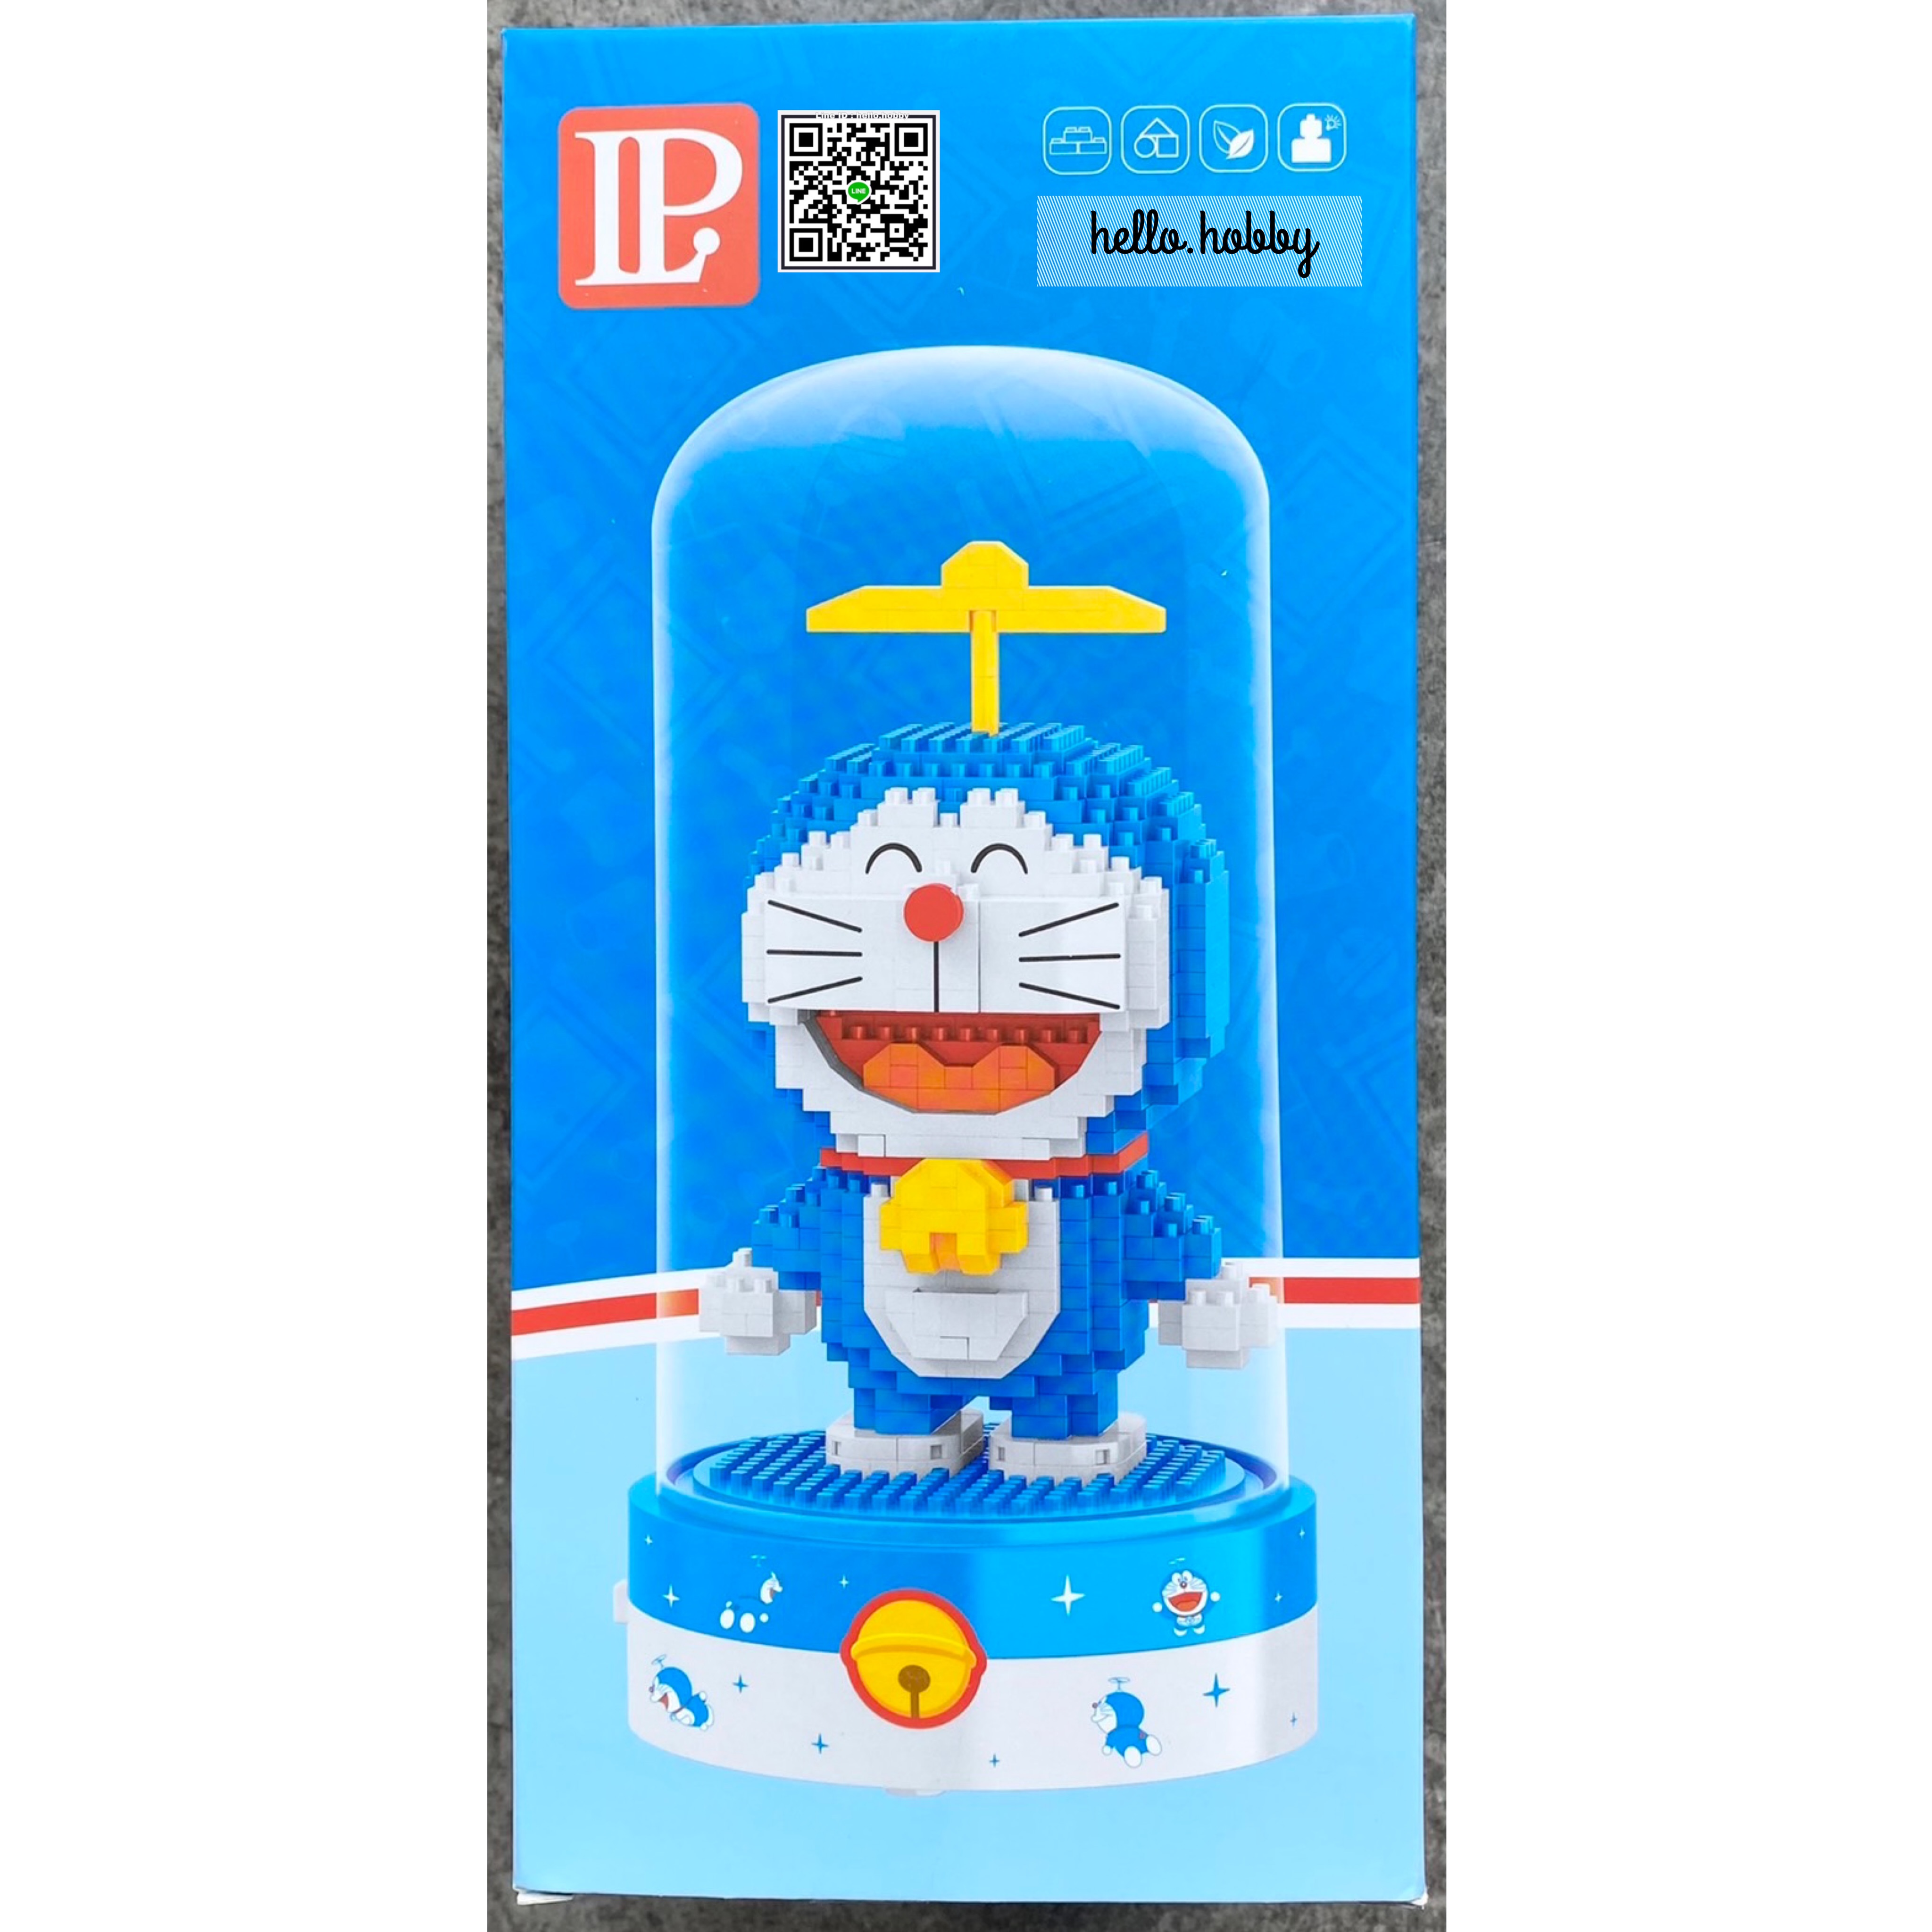 Конструктор 3D из миниблоков Balody LP Doraemon счастливый котик в колбе 619 эл BA210578 конструктор 3d из миниблоков balody doraemon оригинальный телевизор 1046 дет ba21082